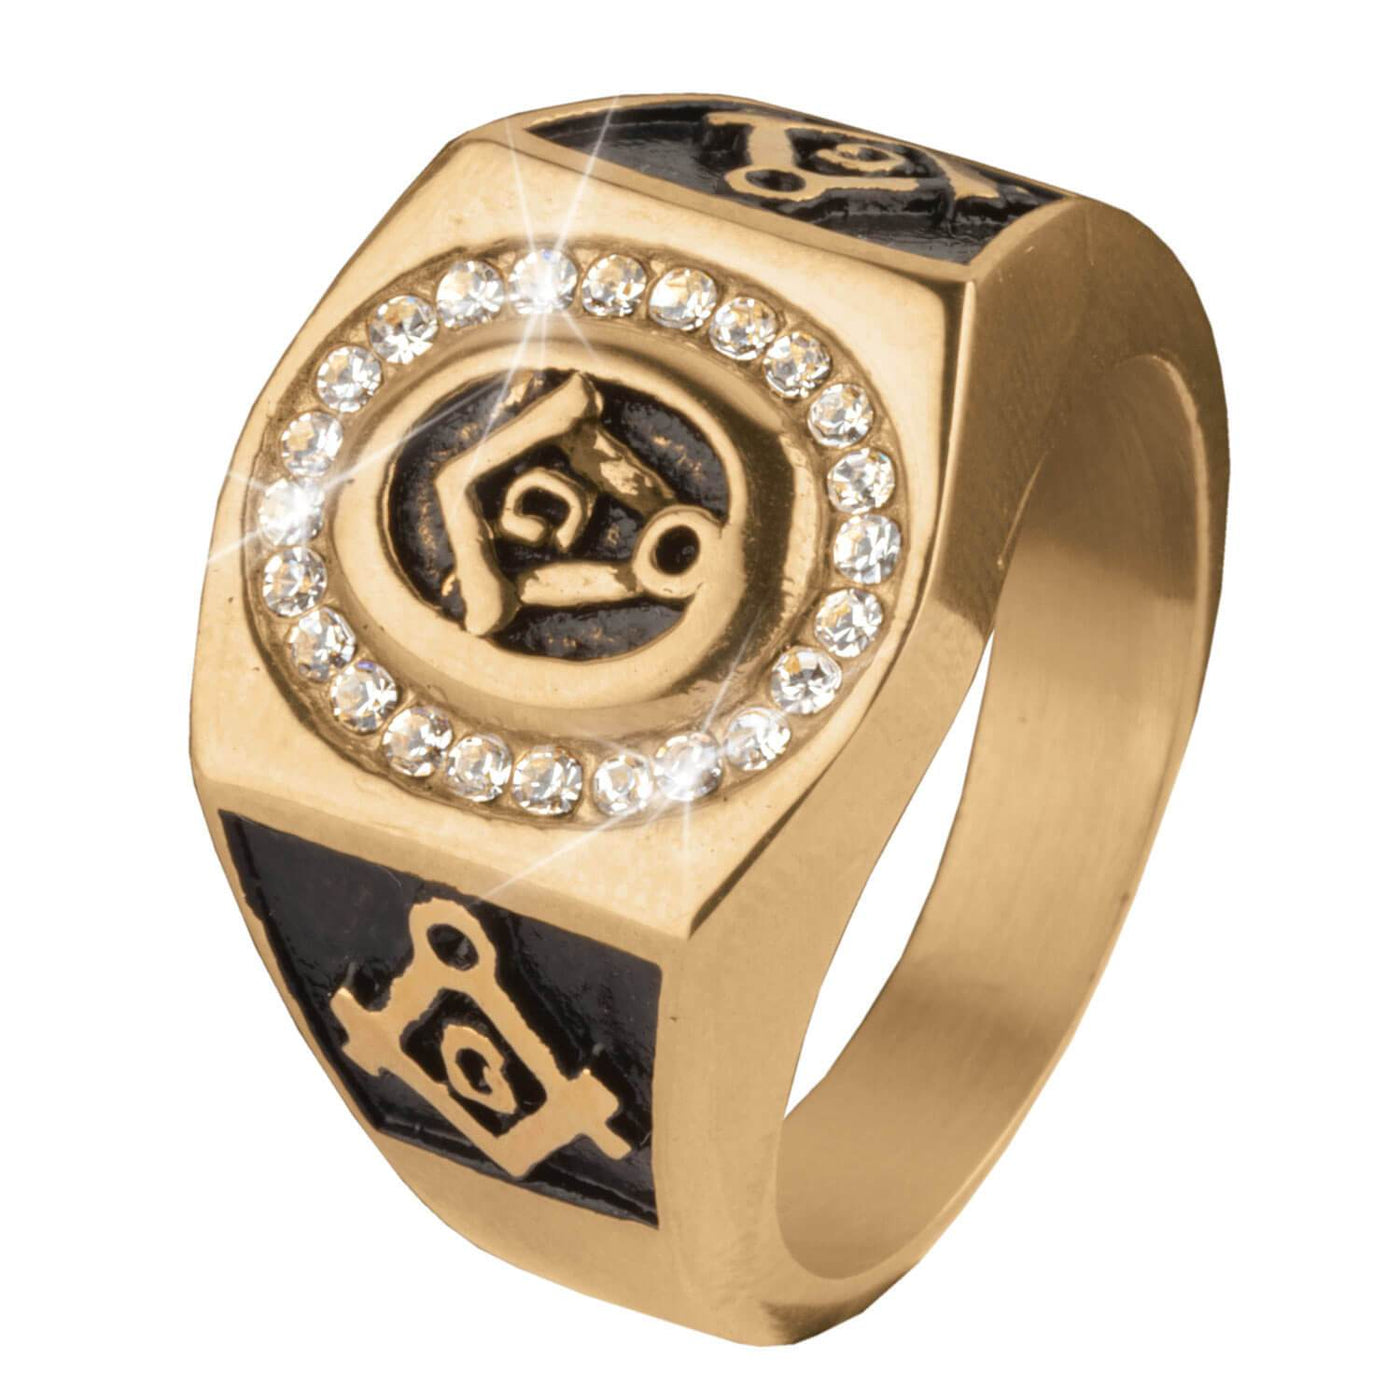 Daniel Steiger Golden Mason's Ring